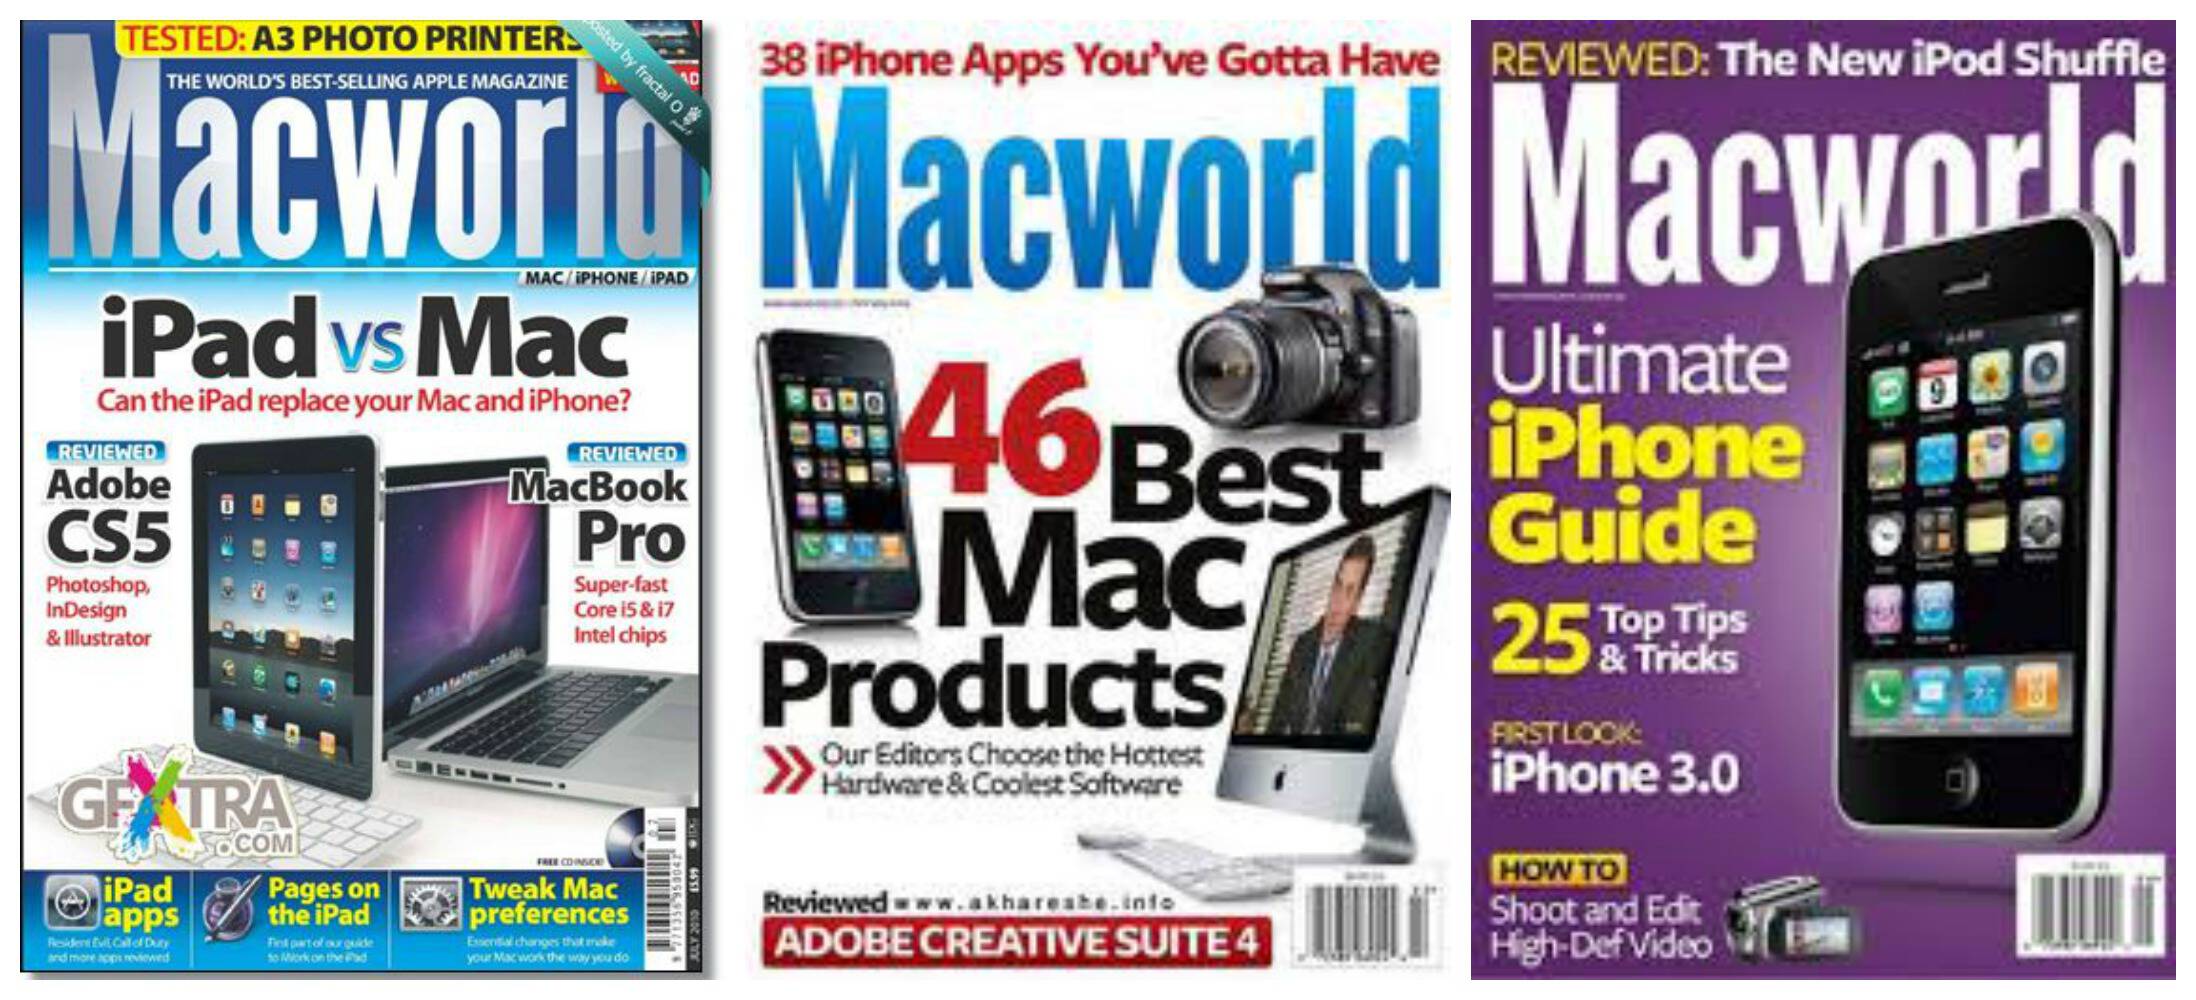 MacWorld Magazine